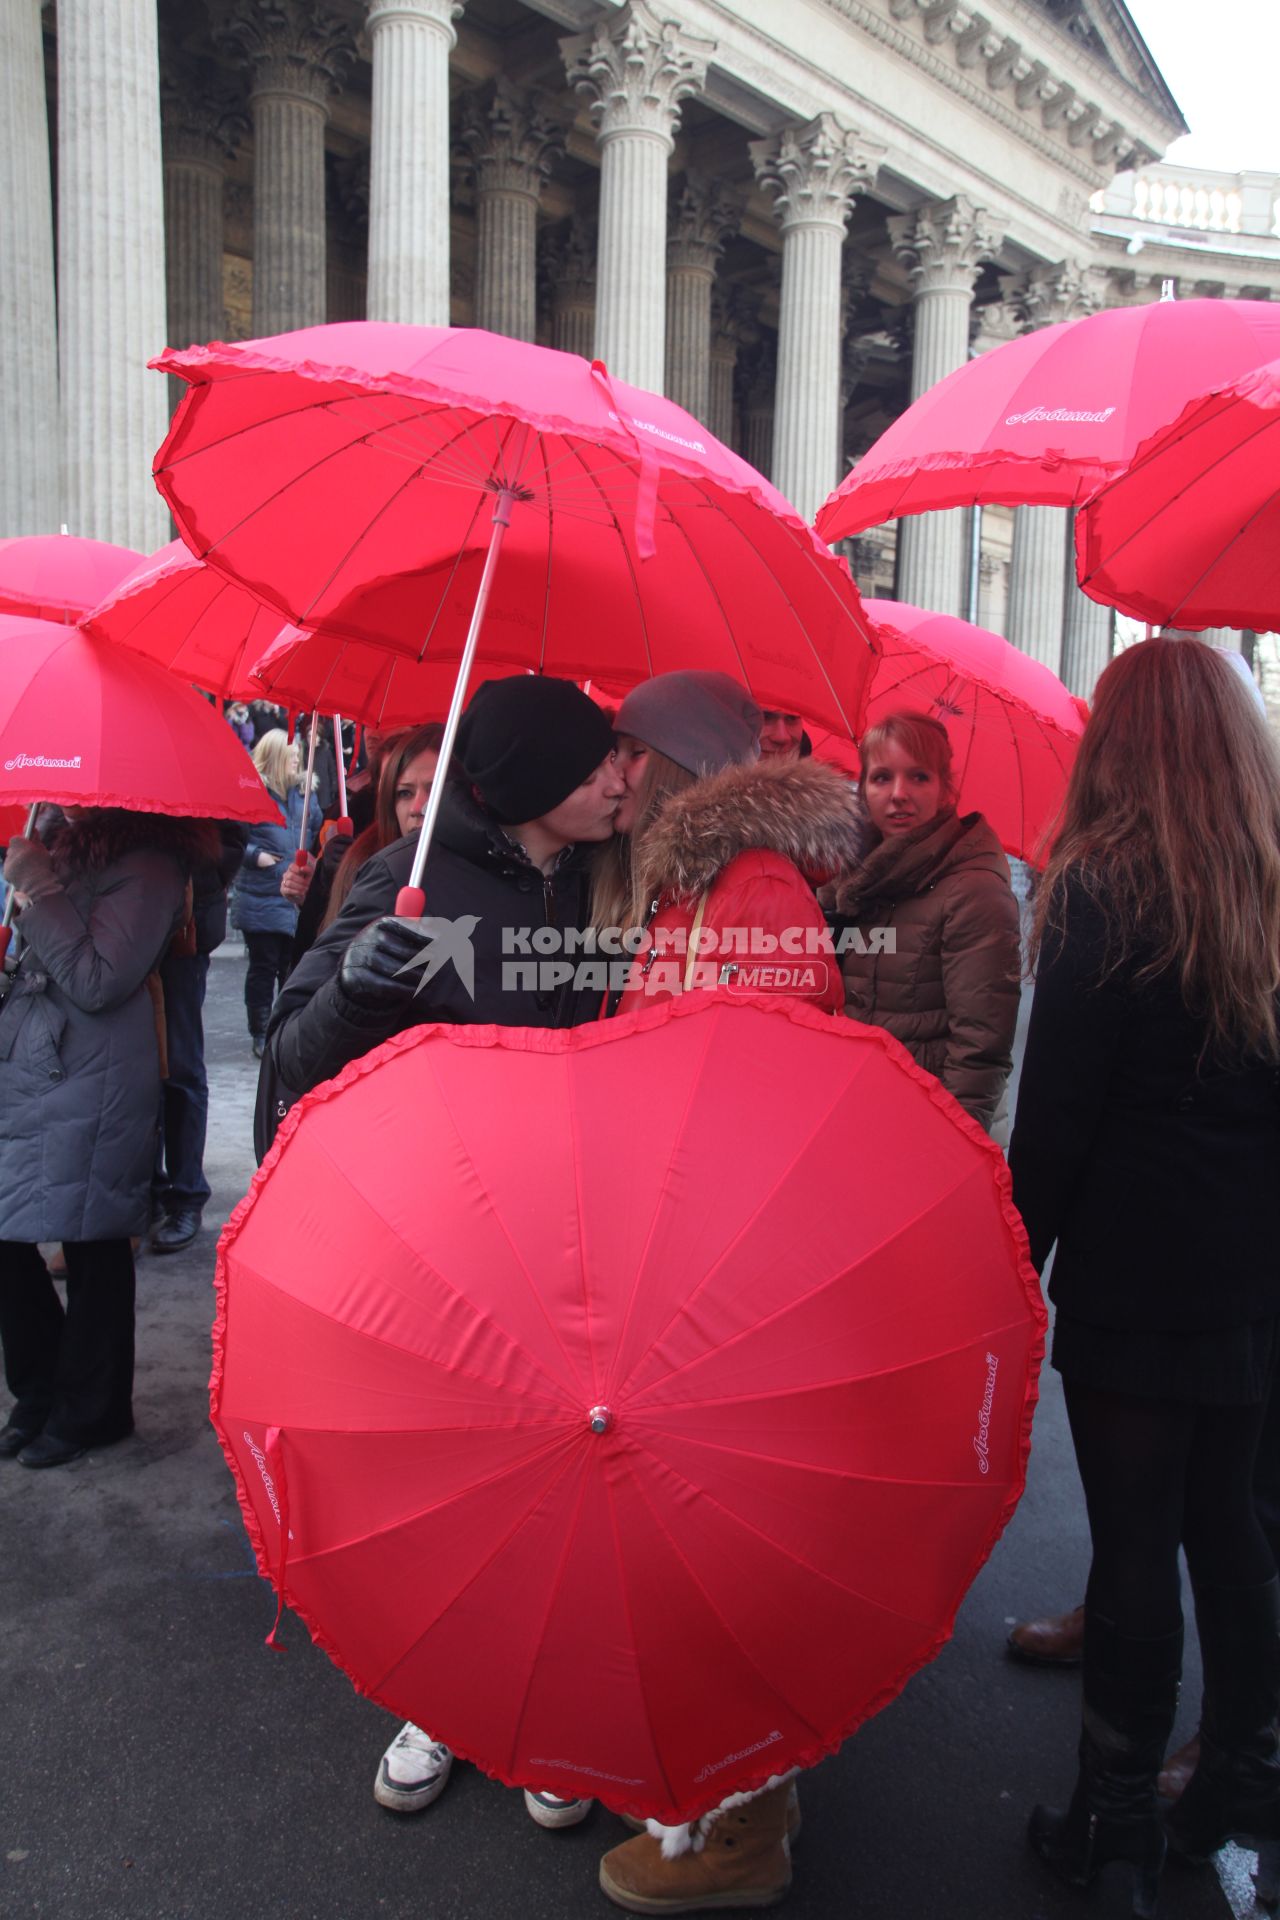 Акция в Санкт-Петербурге `Сердце города 2012` На снимке: девушка и юноша целуются стоя под красным зонтом в форме сердца.